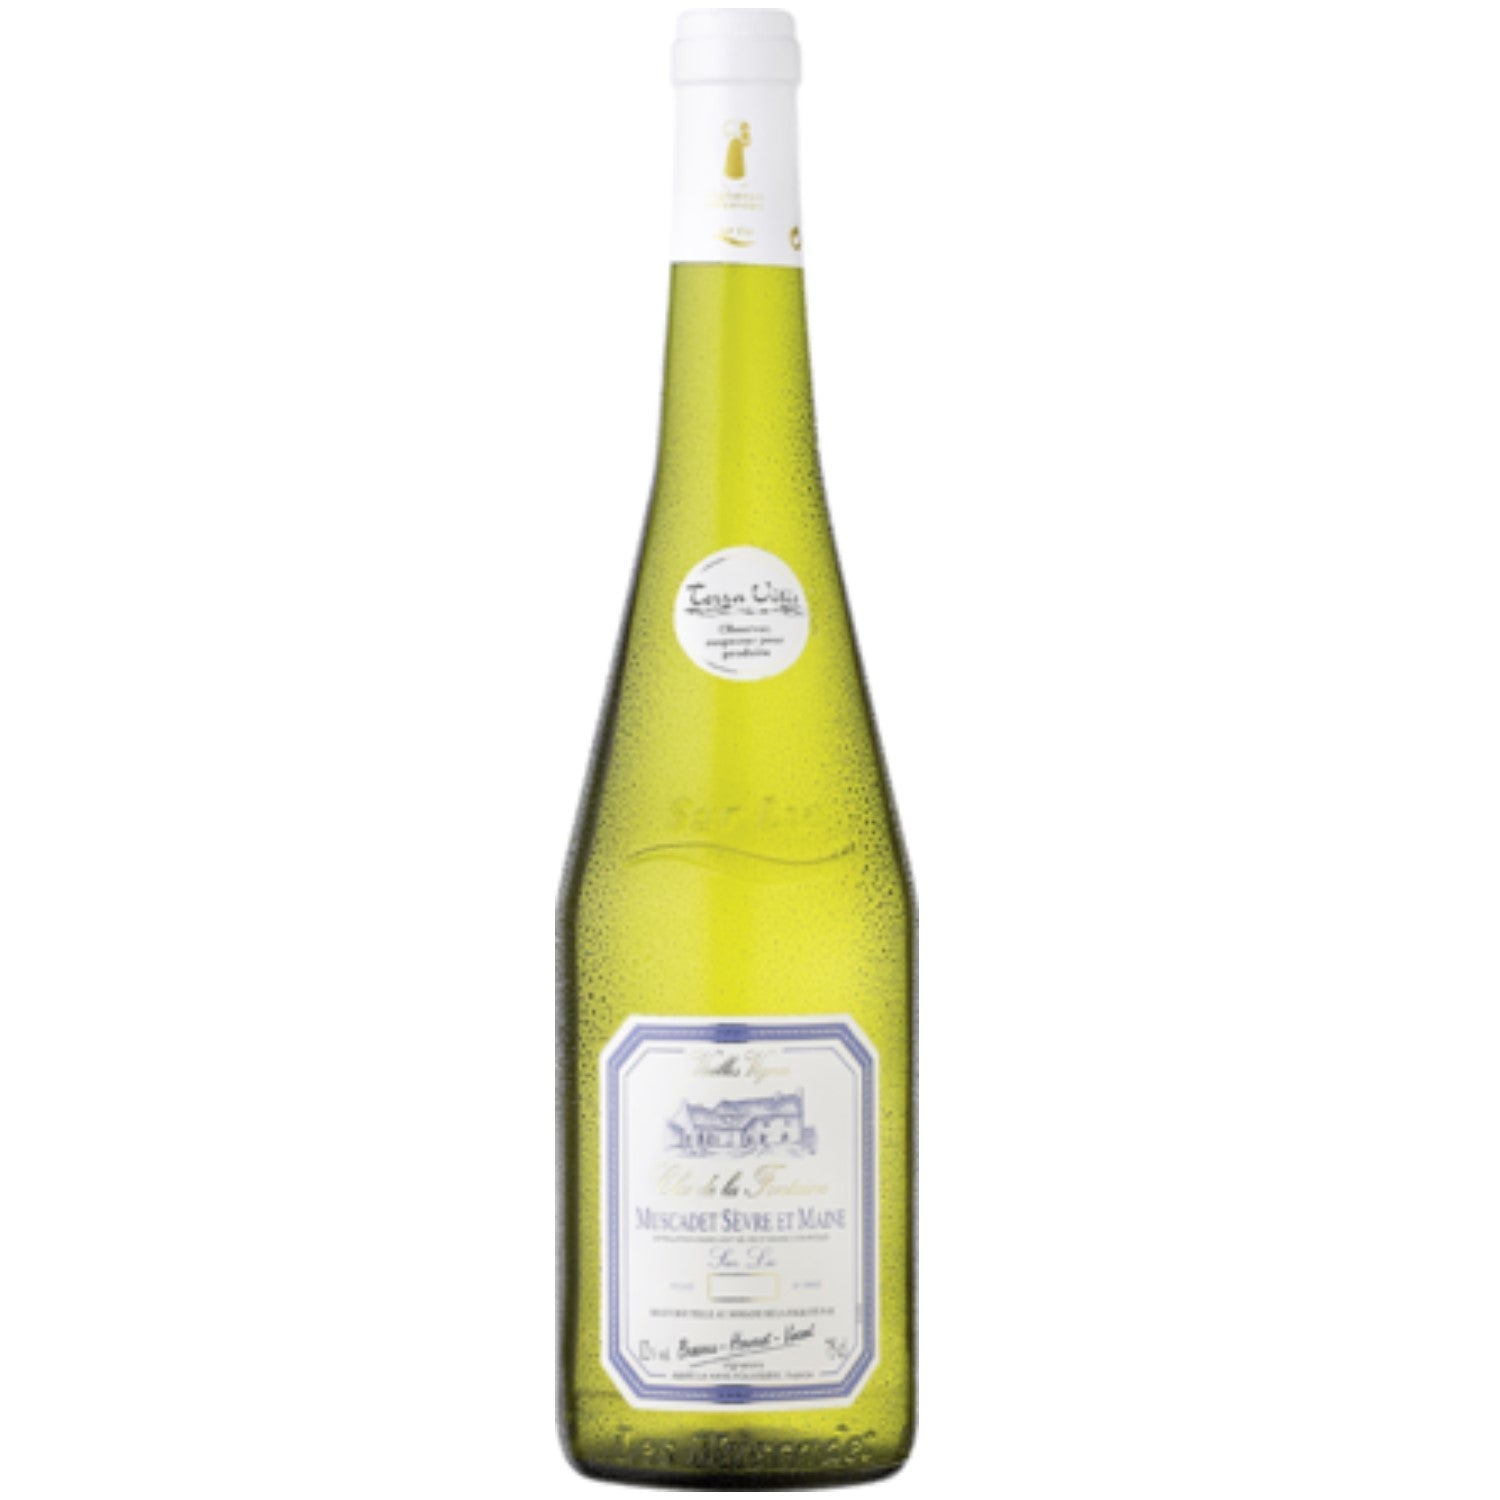 Clos de la Fontaine Muscadet Sèvre et Maine Sur Lie Weißwein vegan trocken AOC Frankreich (12 x 0.75l) - Versanel -